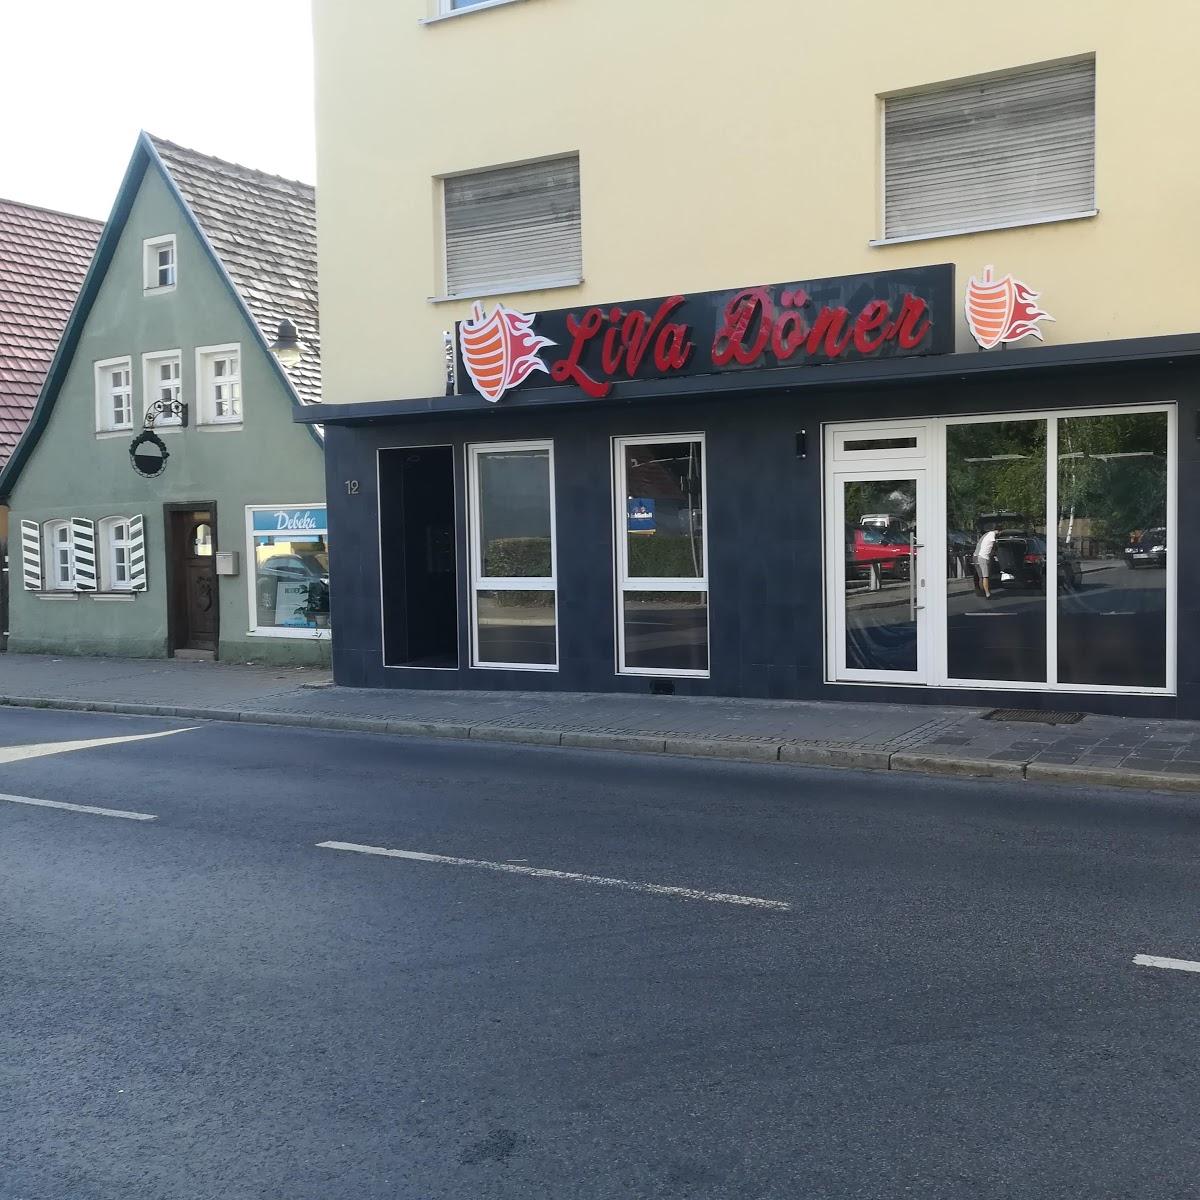 Restaurant "LiVa Döner & Pizza More" in Roth